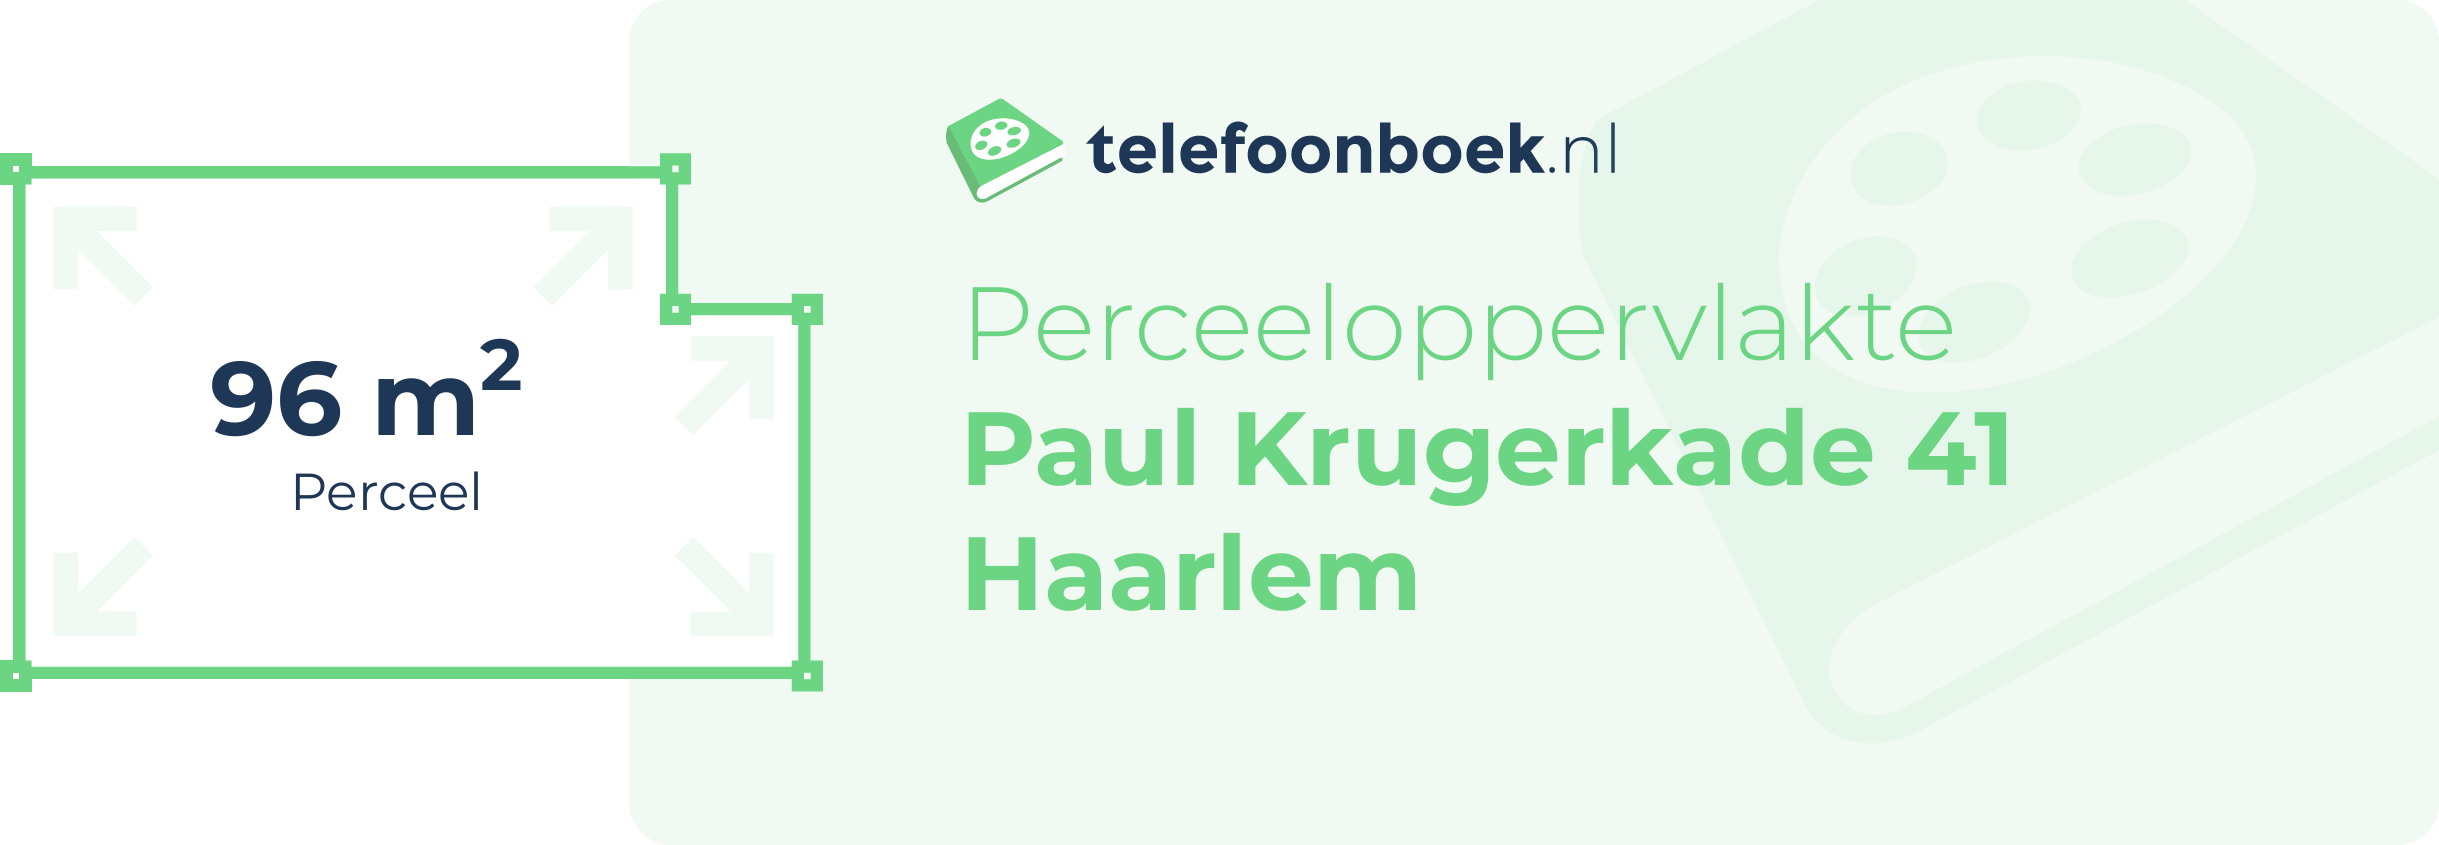 Perceeloppervlakte Paul Krugerkade 41 Haarlem